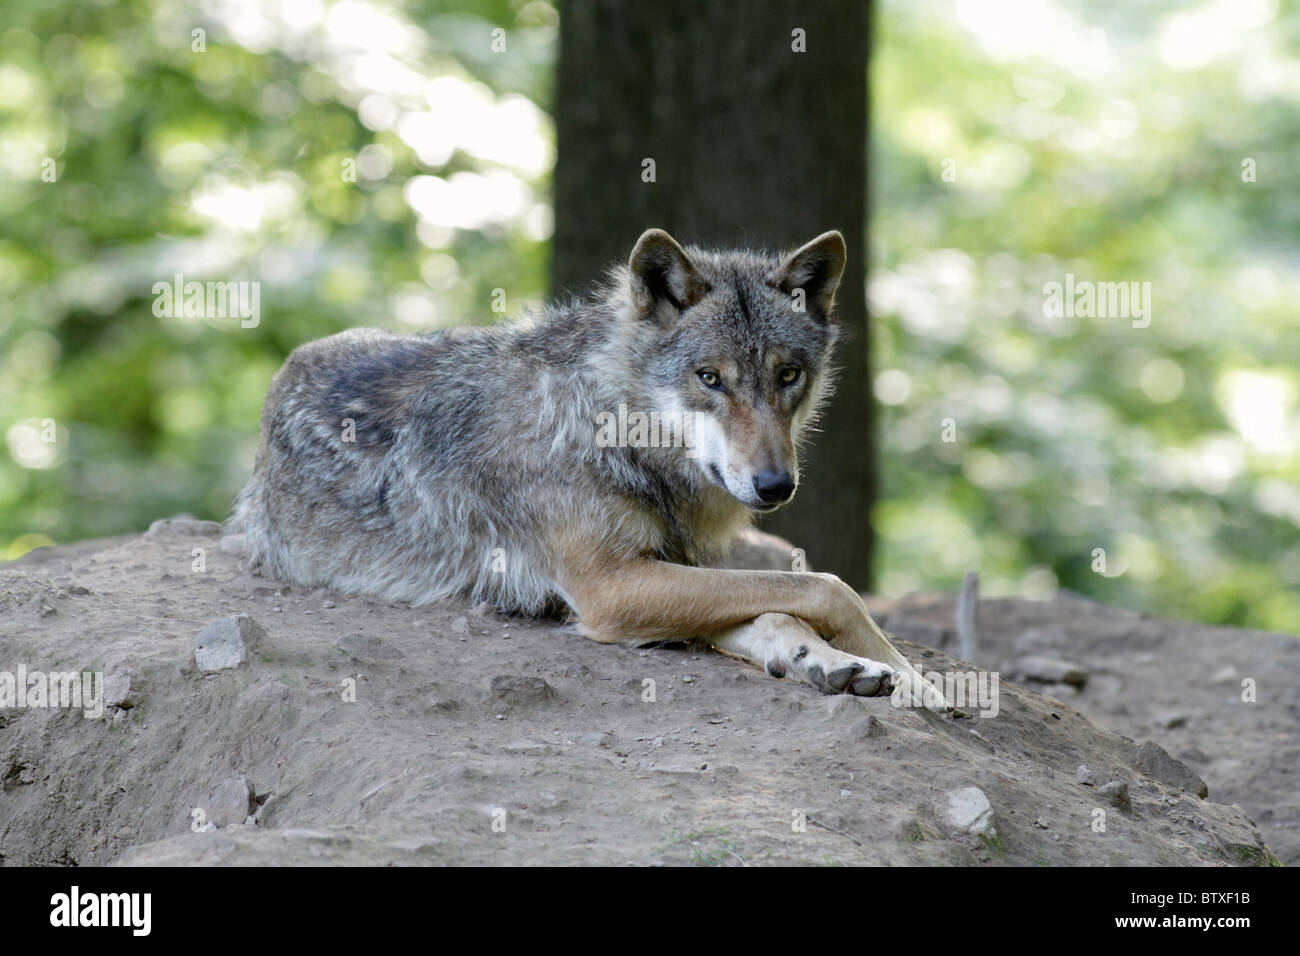 Lobo, canis lupus), descansando con patas delanteras cruzadas, Alemania Foto de stock